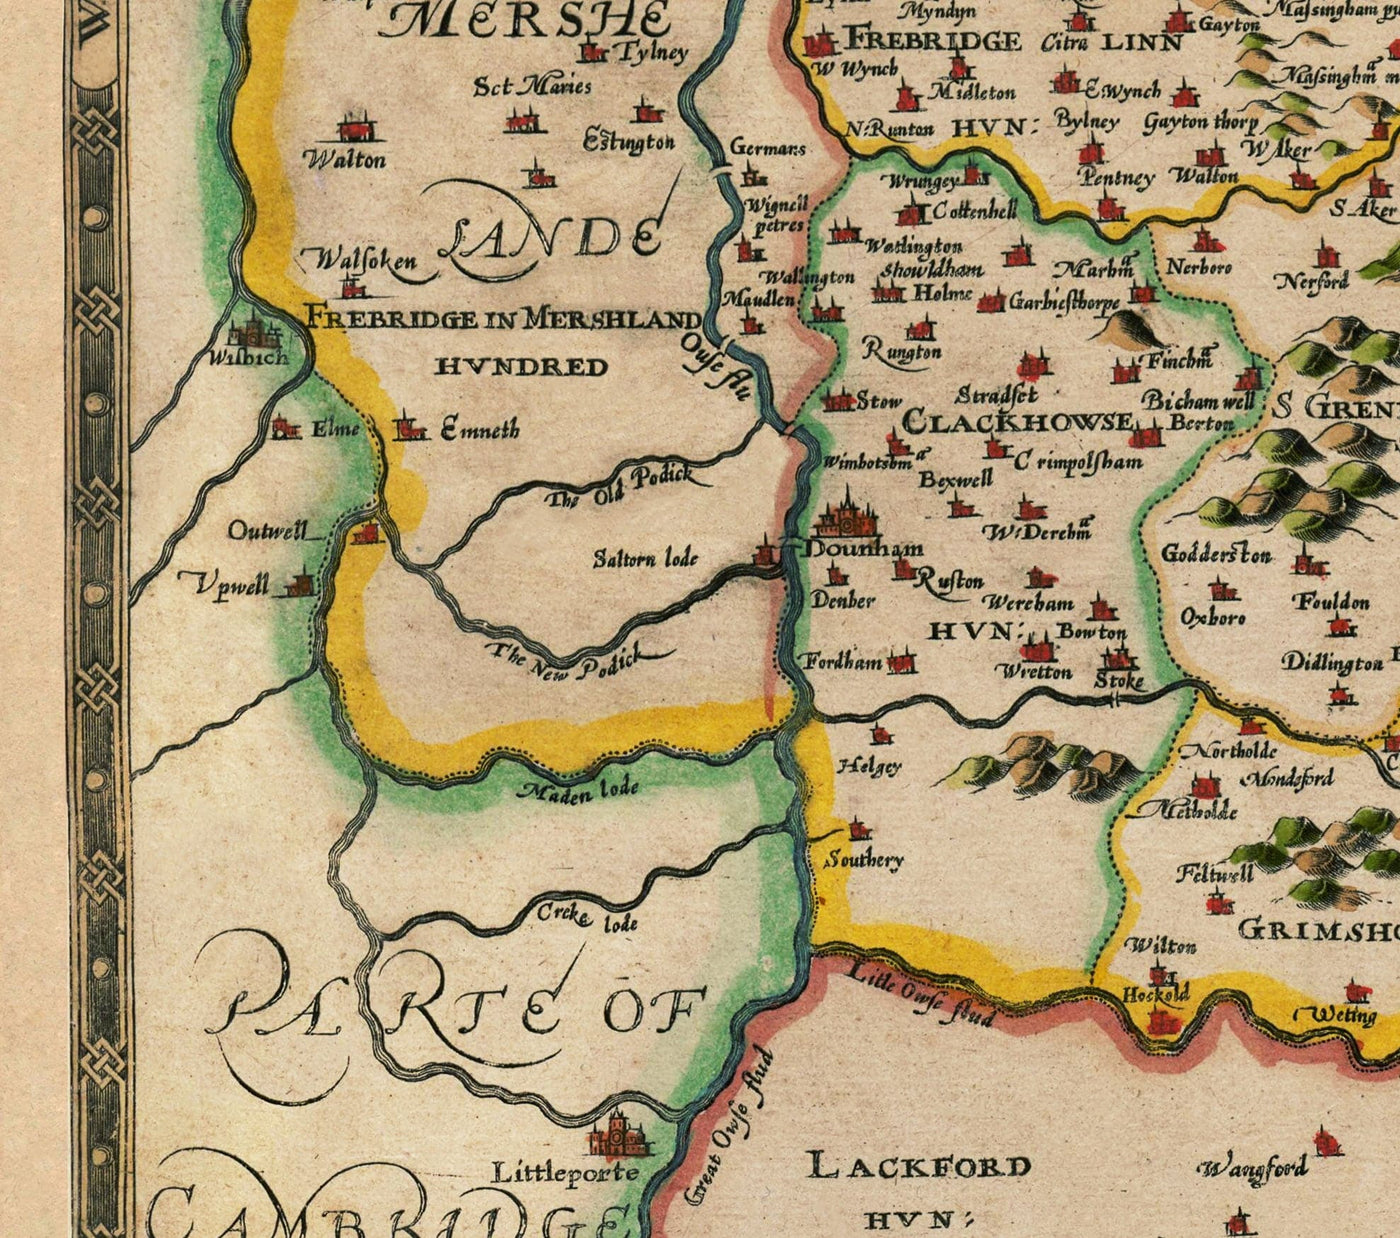 Viejo mapa de Norfolk, 1611 de John Speed ​​- Norwich, Great Yarmouth, King's Lynn, Thetford